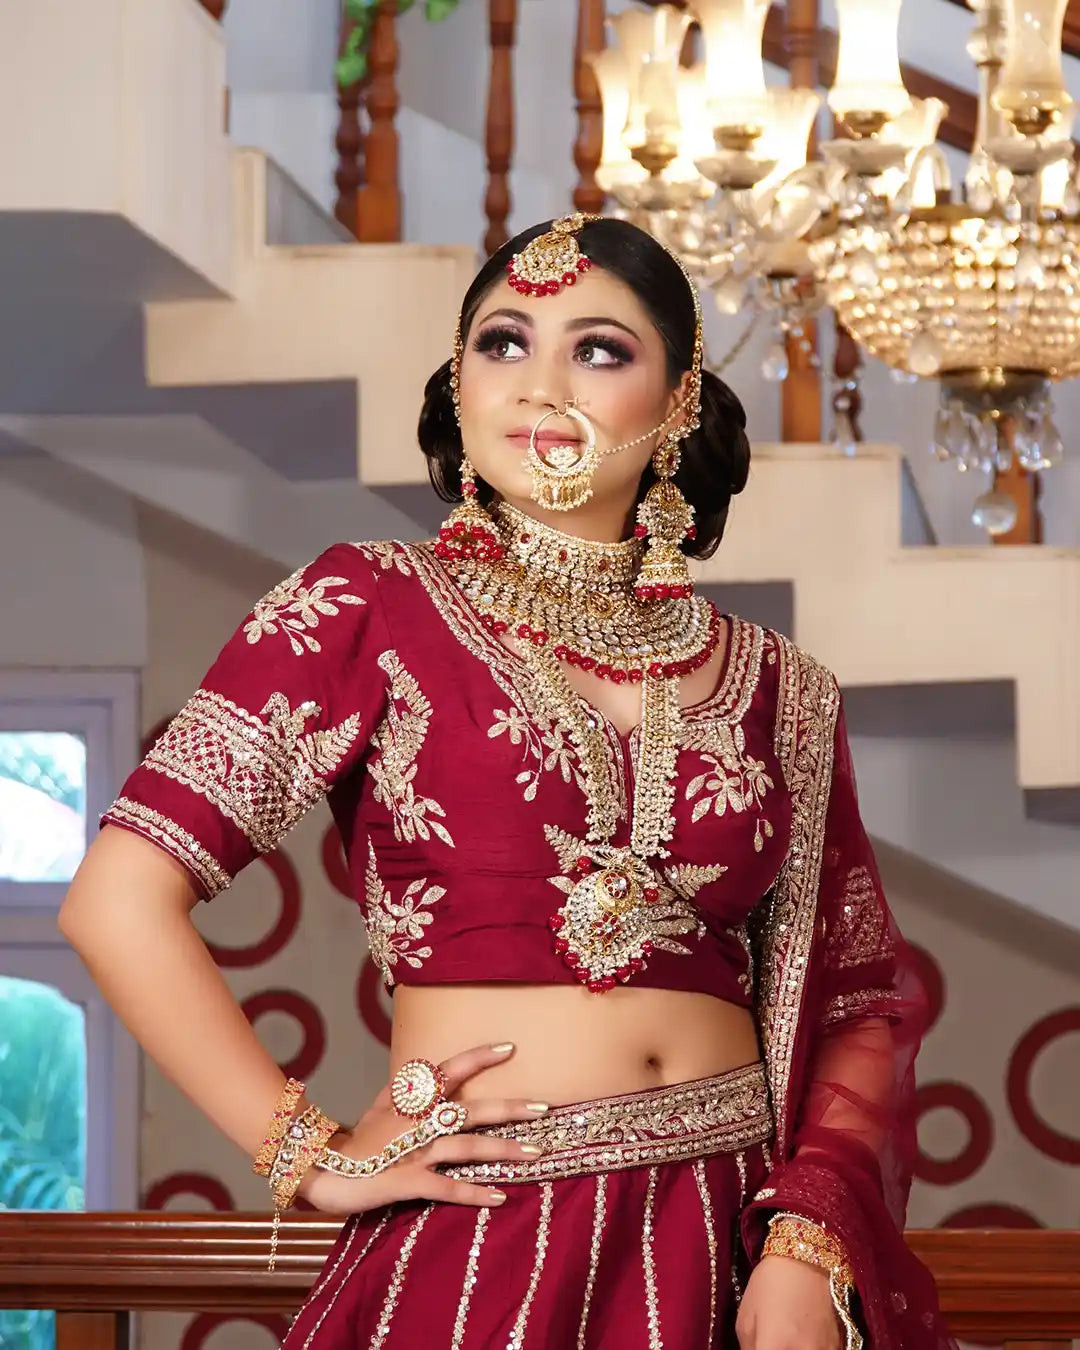 Manish Malhotra Design Bridal Lehenga Choli Indian Wedding Wear Lehenga  Choli Party Wear Lehngha Choli Sangeet Function Wear Lengha Choli - Etsy